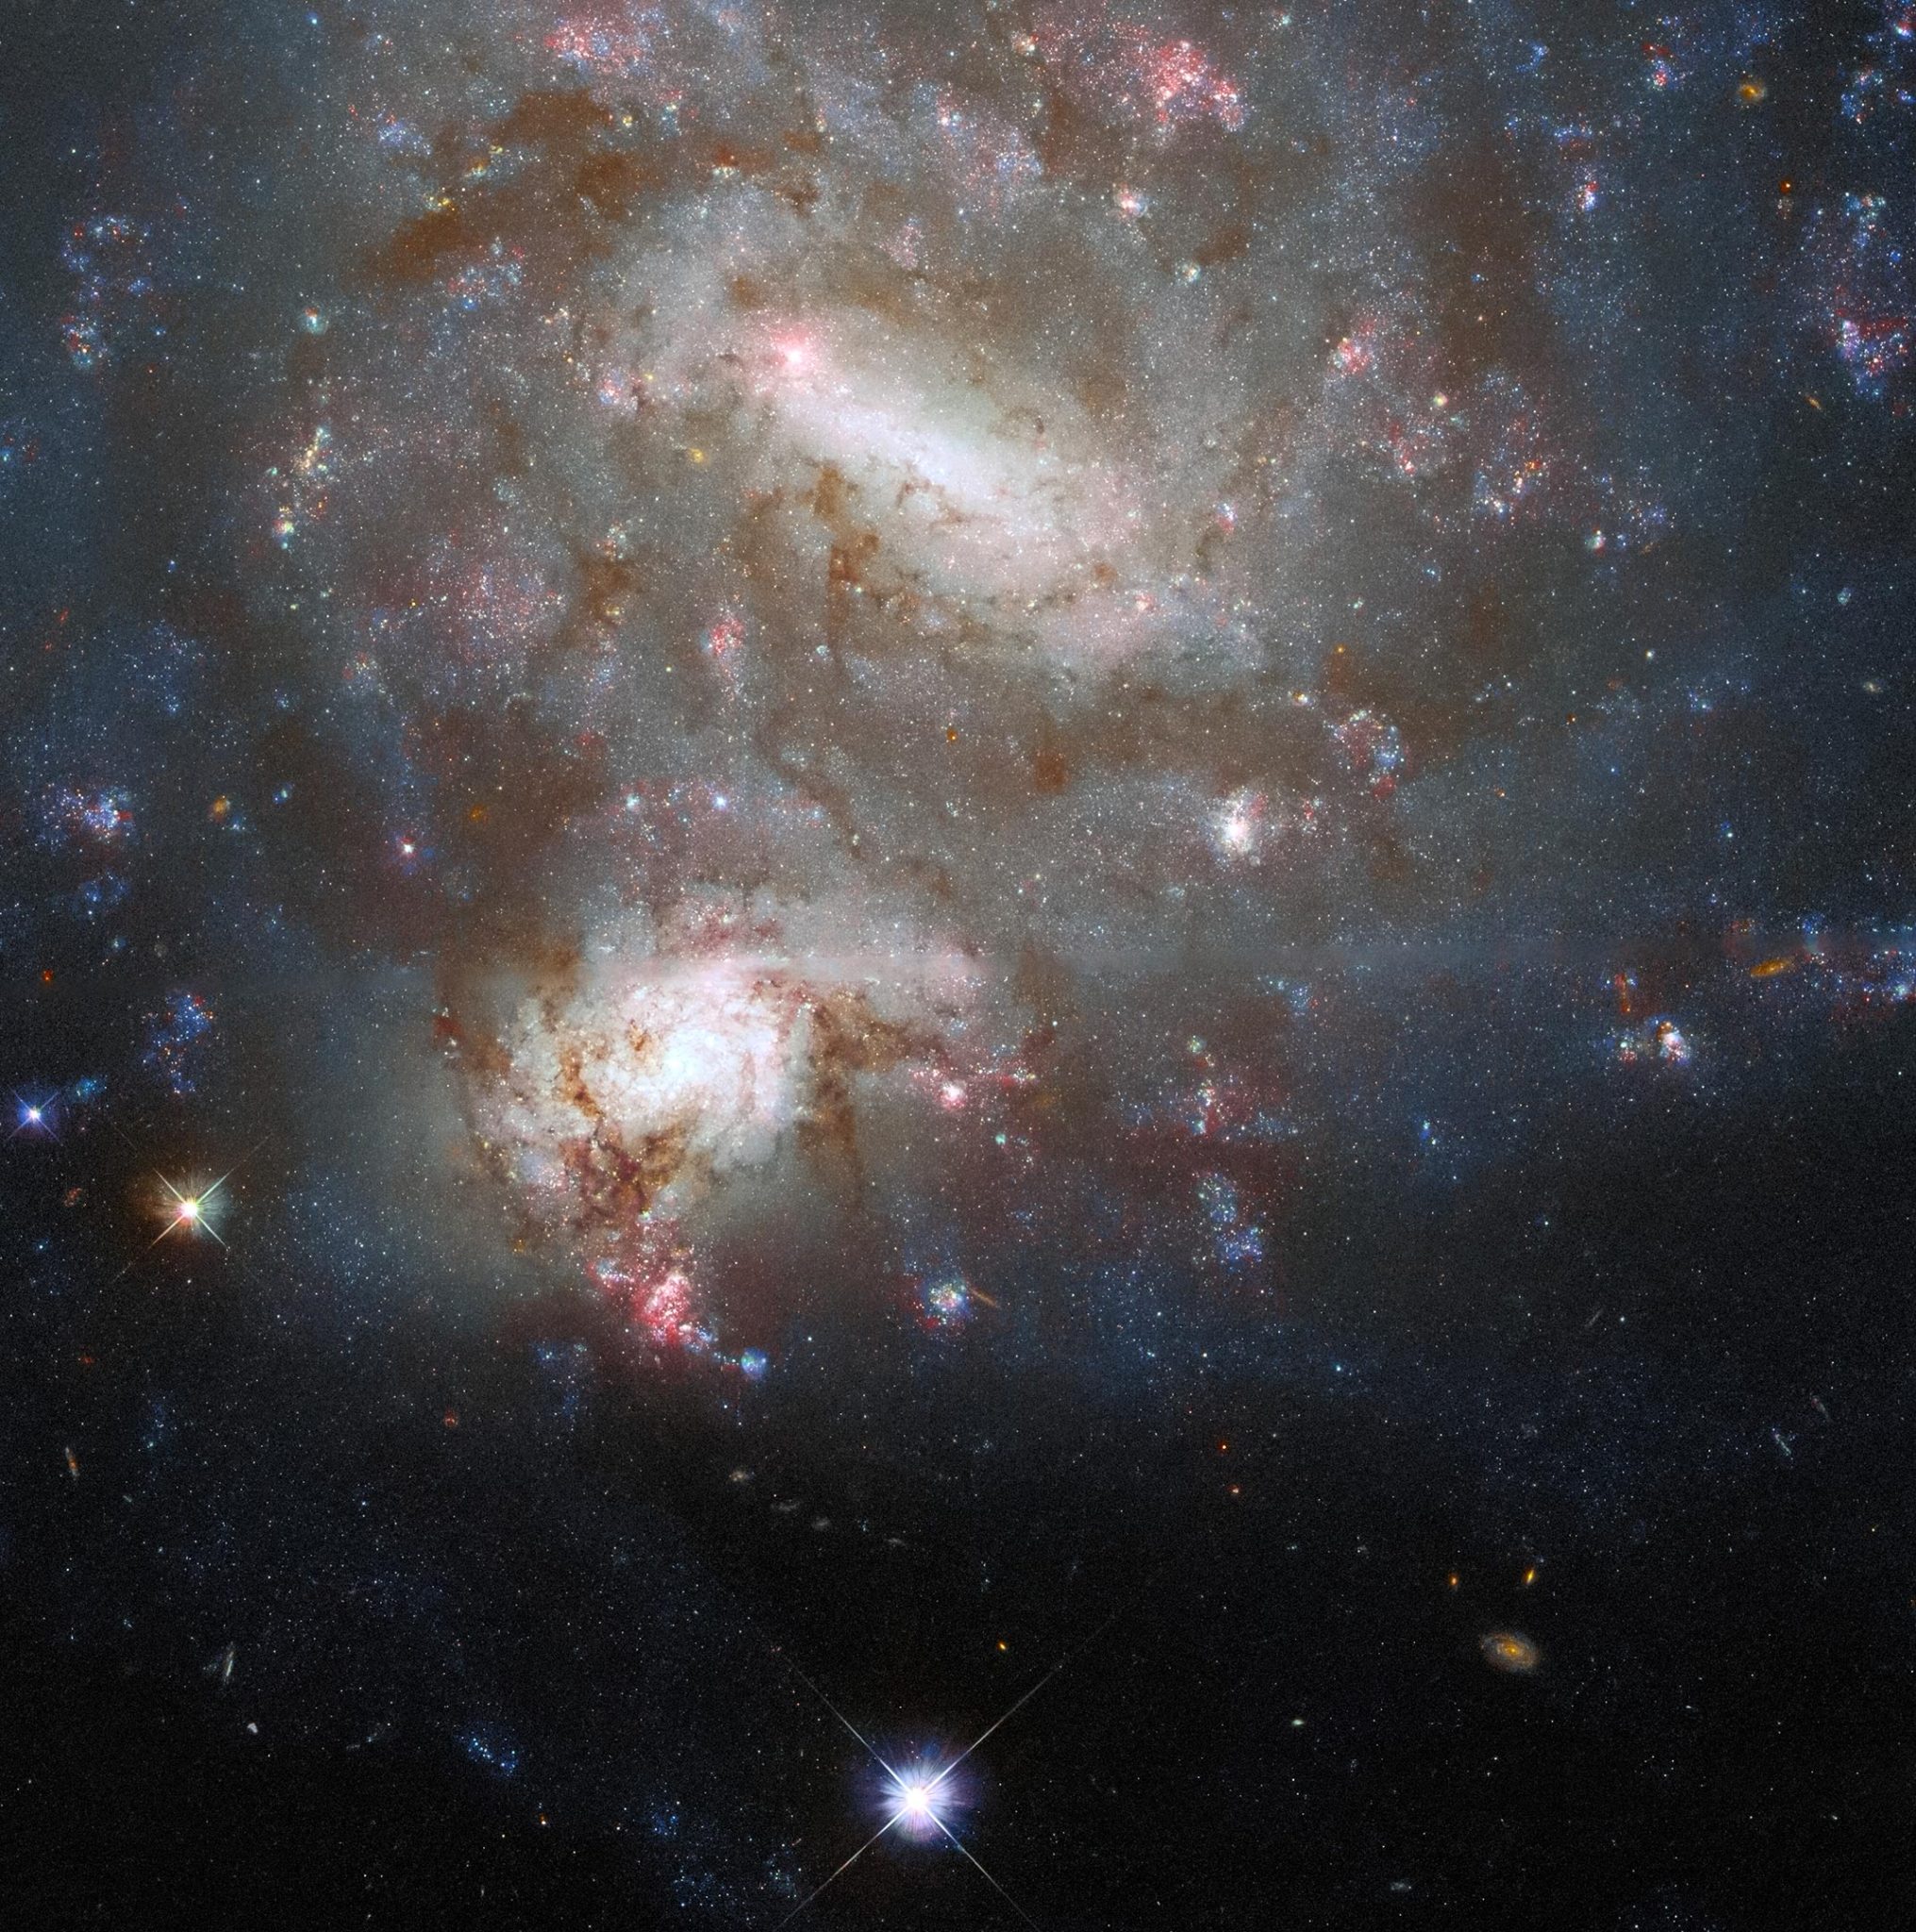 哈勃太空望远镜拍摄的双子星系NGC 4496A和NGC 4496B